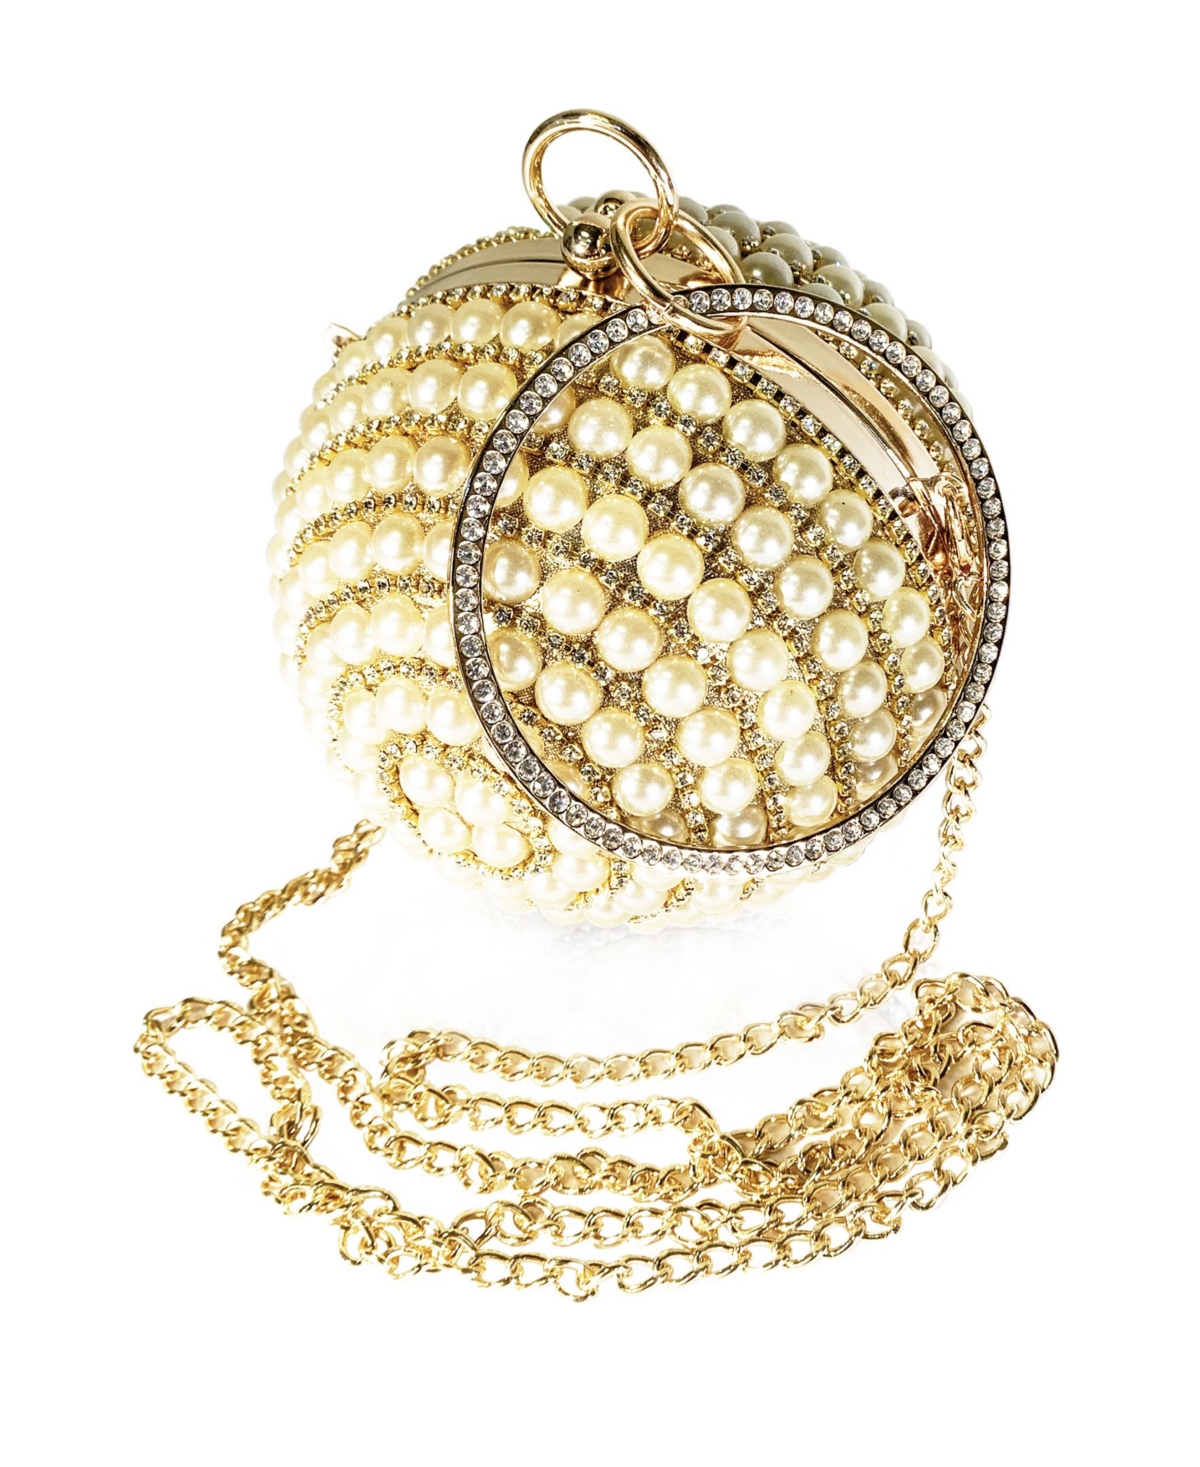 Women's Disco Ball Handbag - Gold